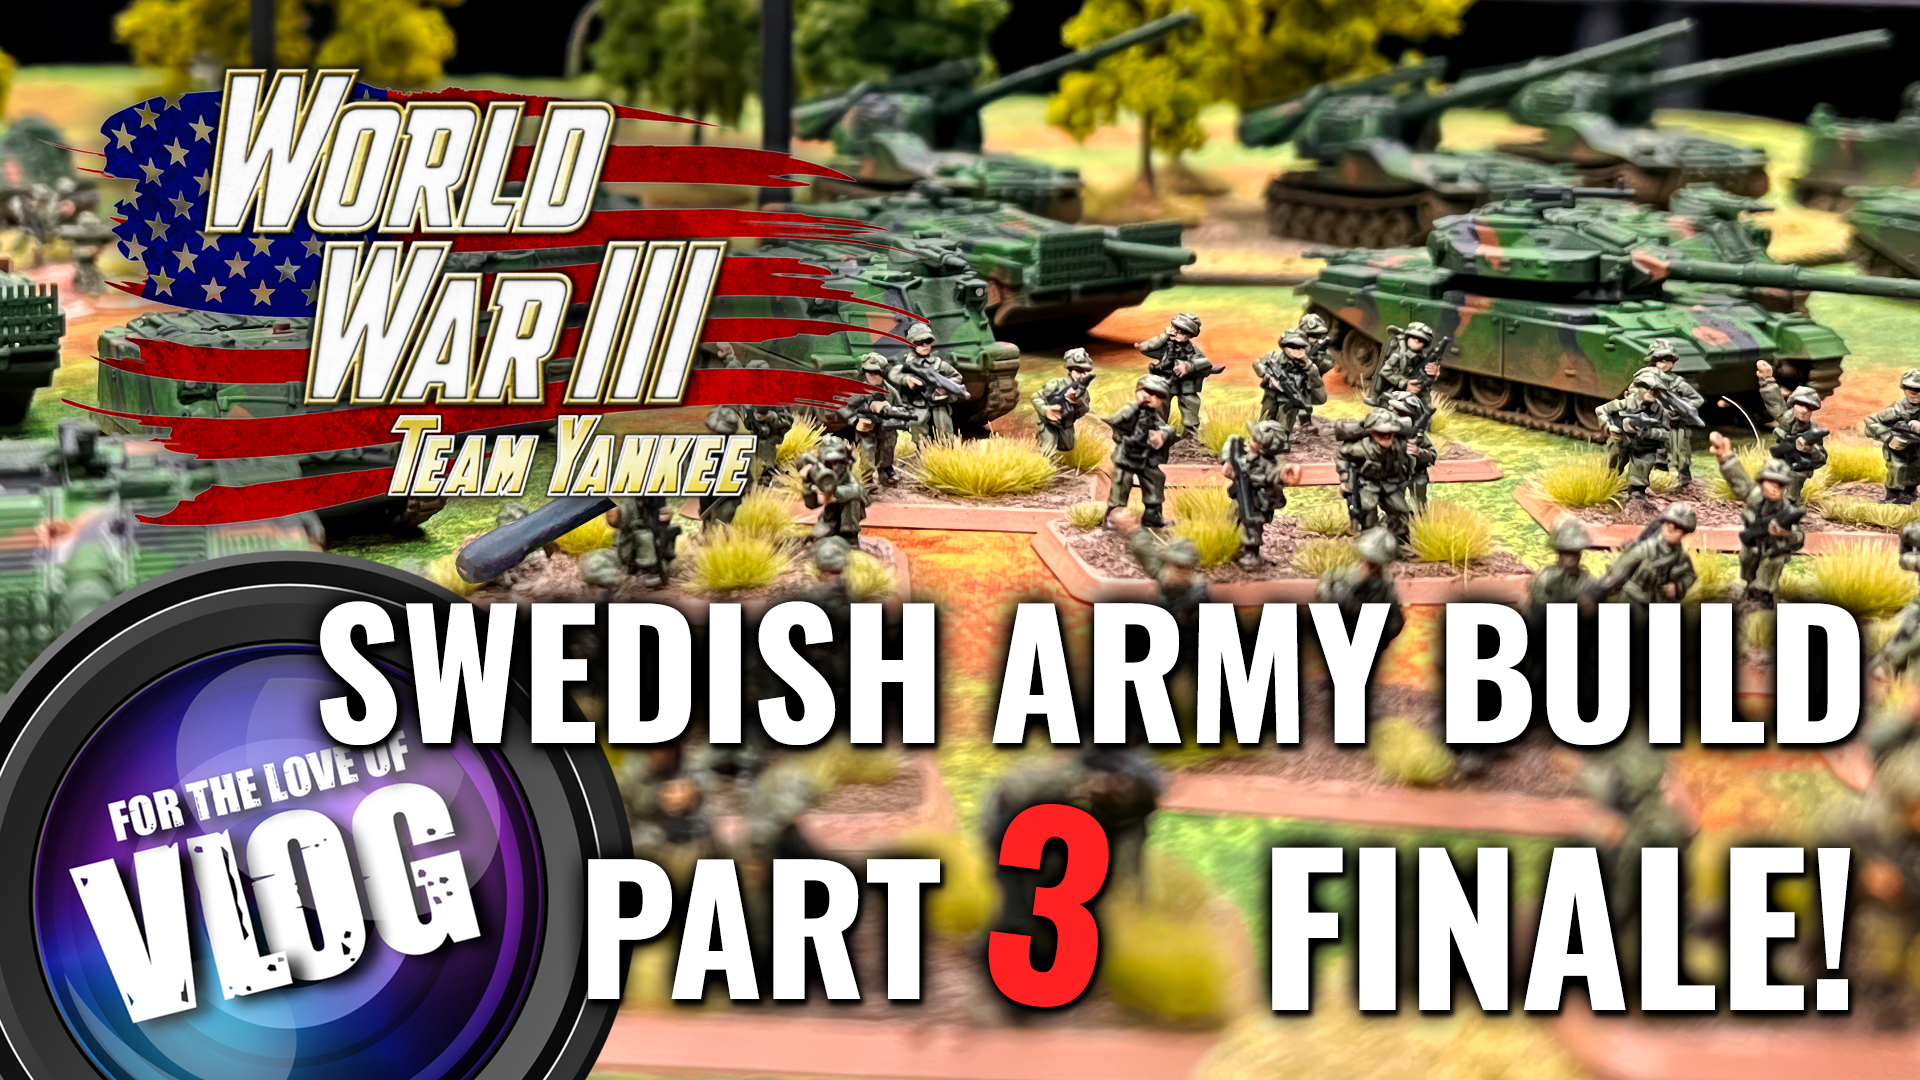 Part 3 Team Yankee Swedish Army Build Vlog